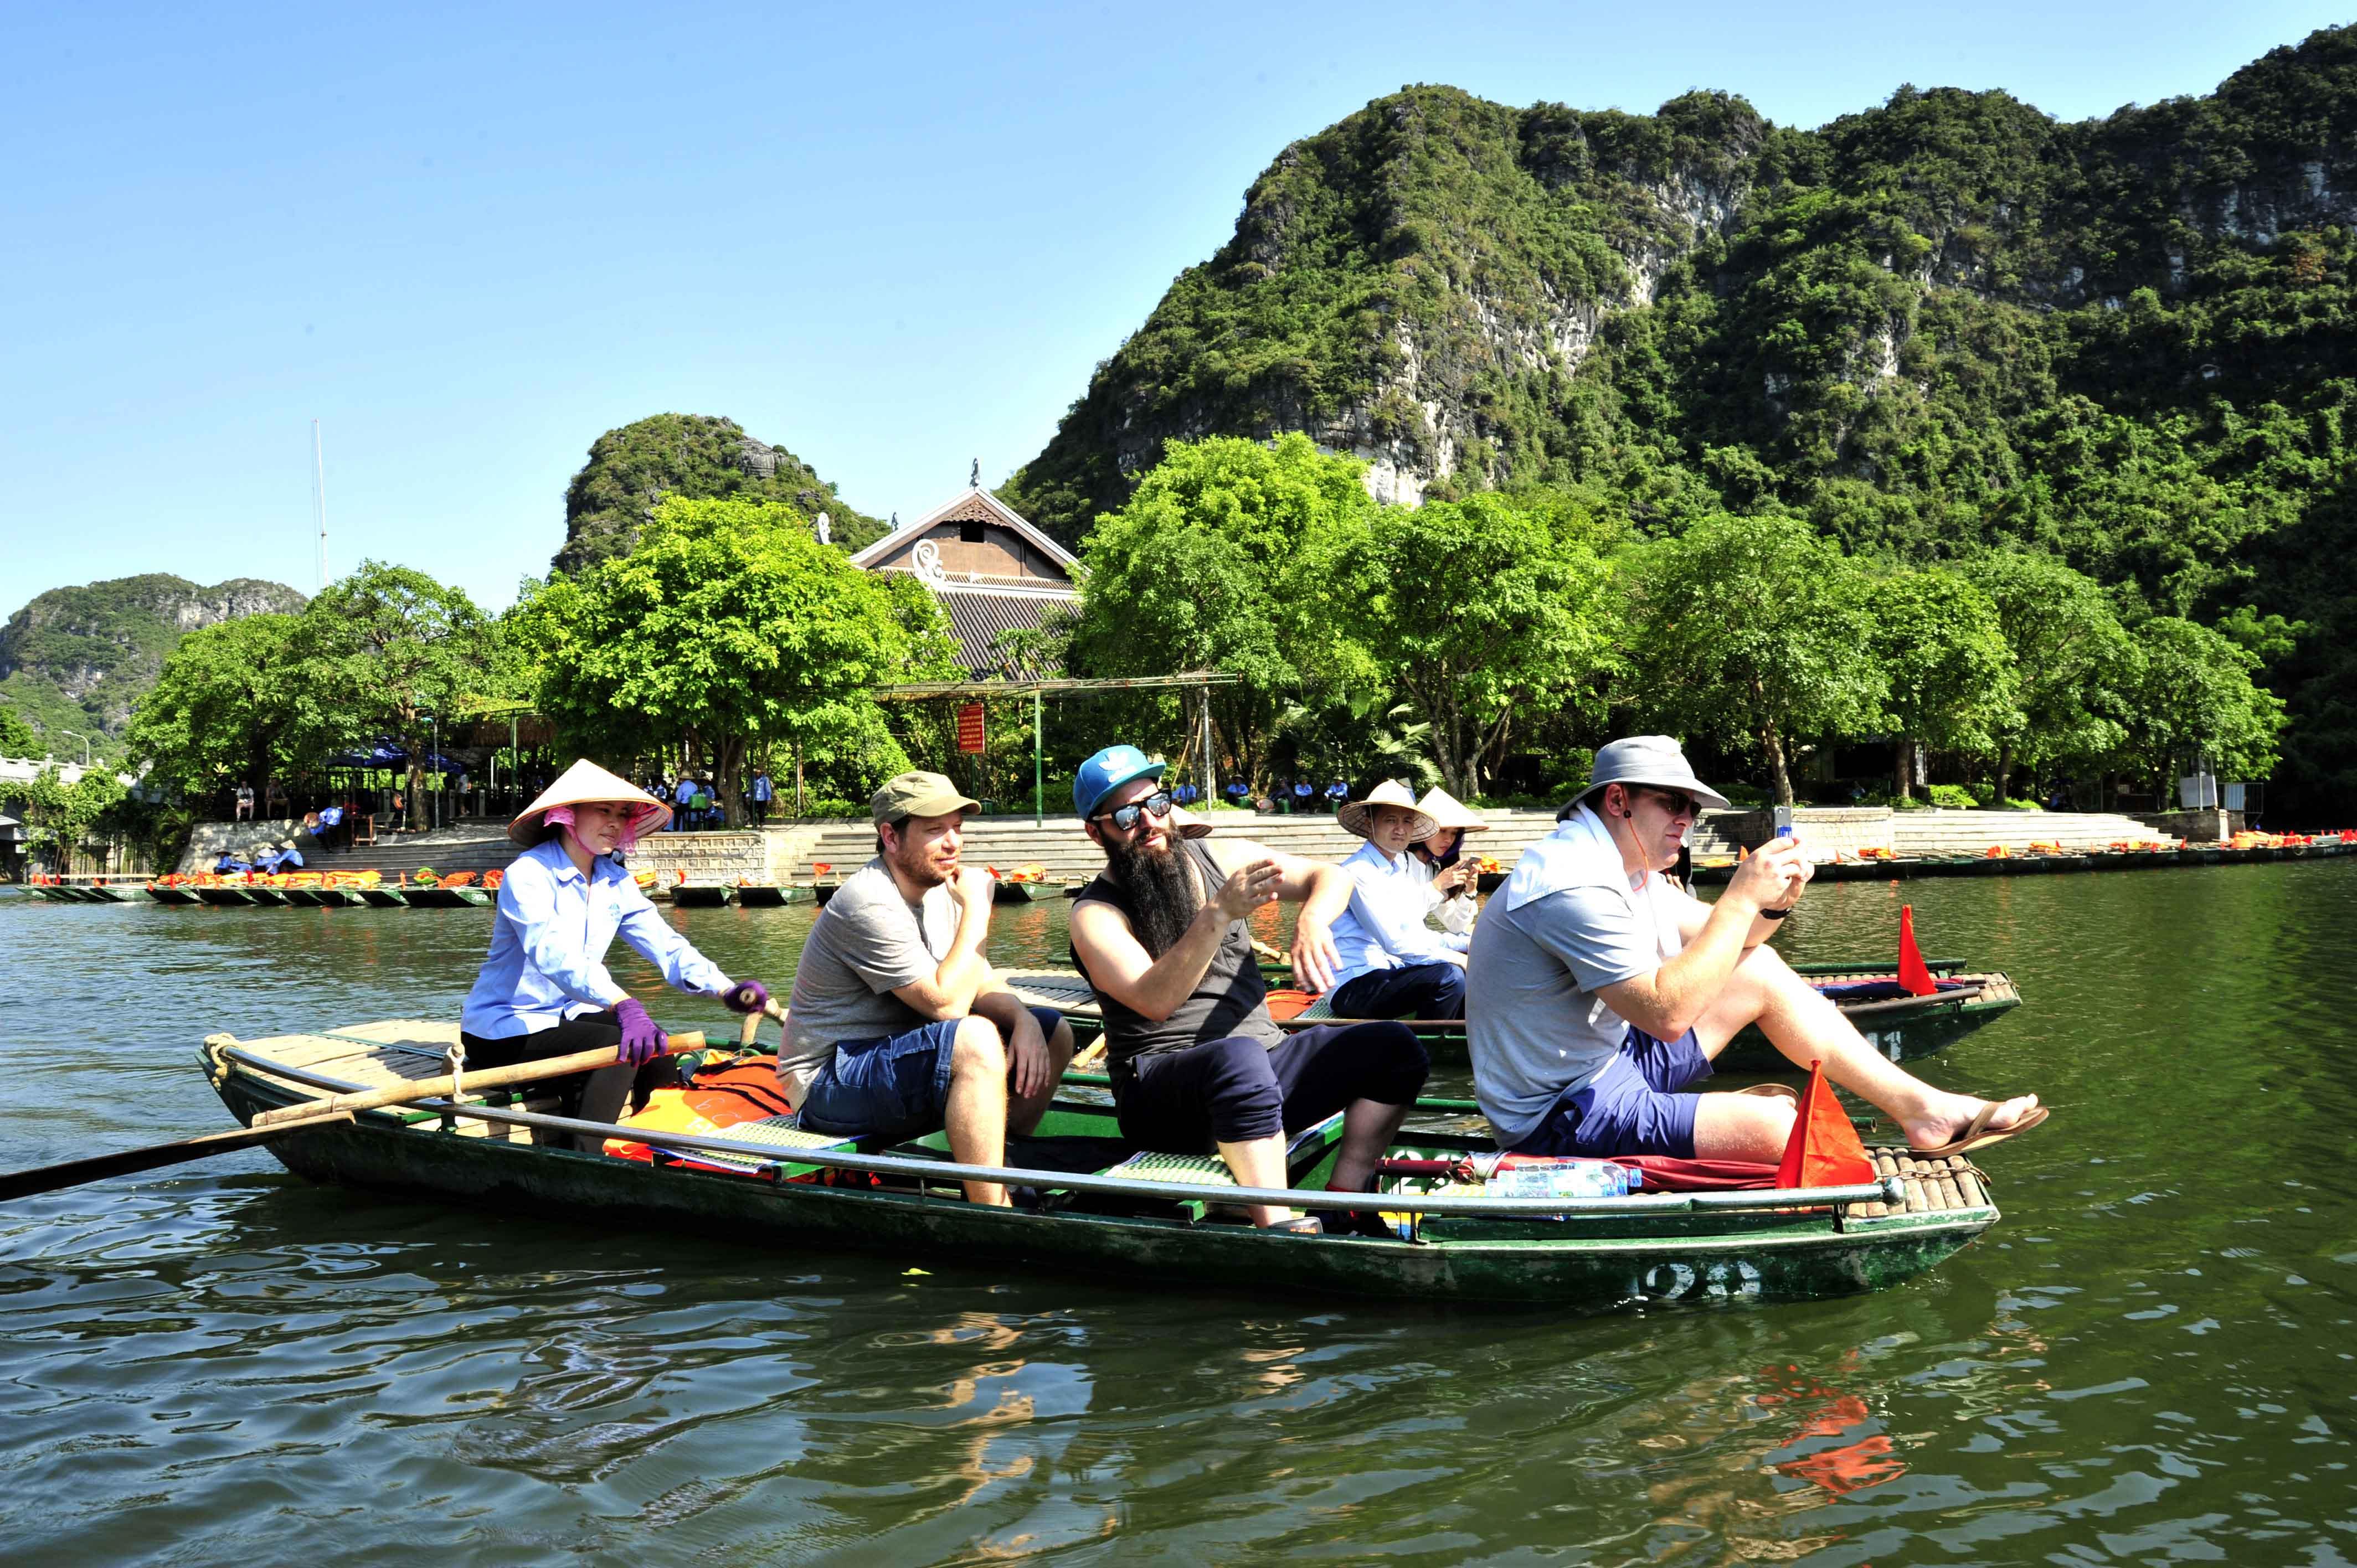 Bai Dinh Pagoda & Trang An Boating 1 Day